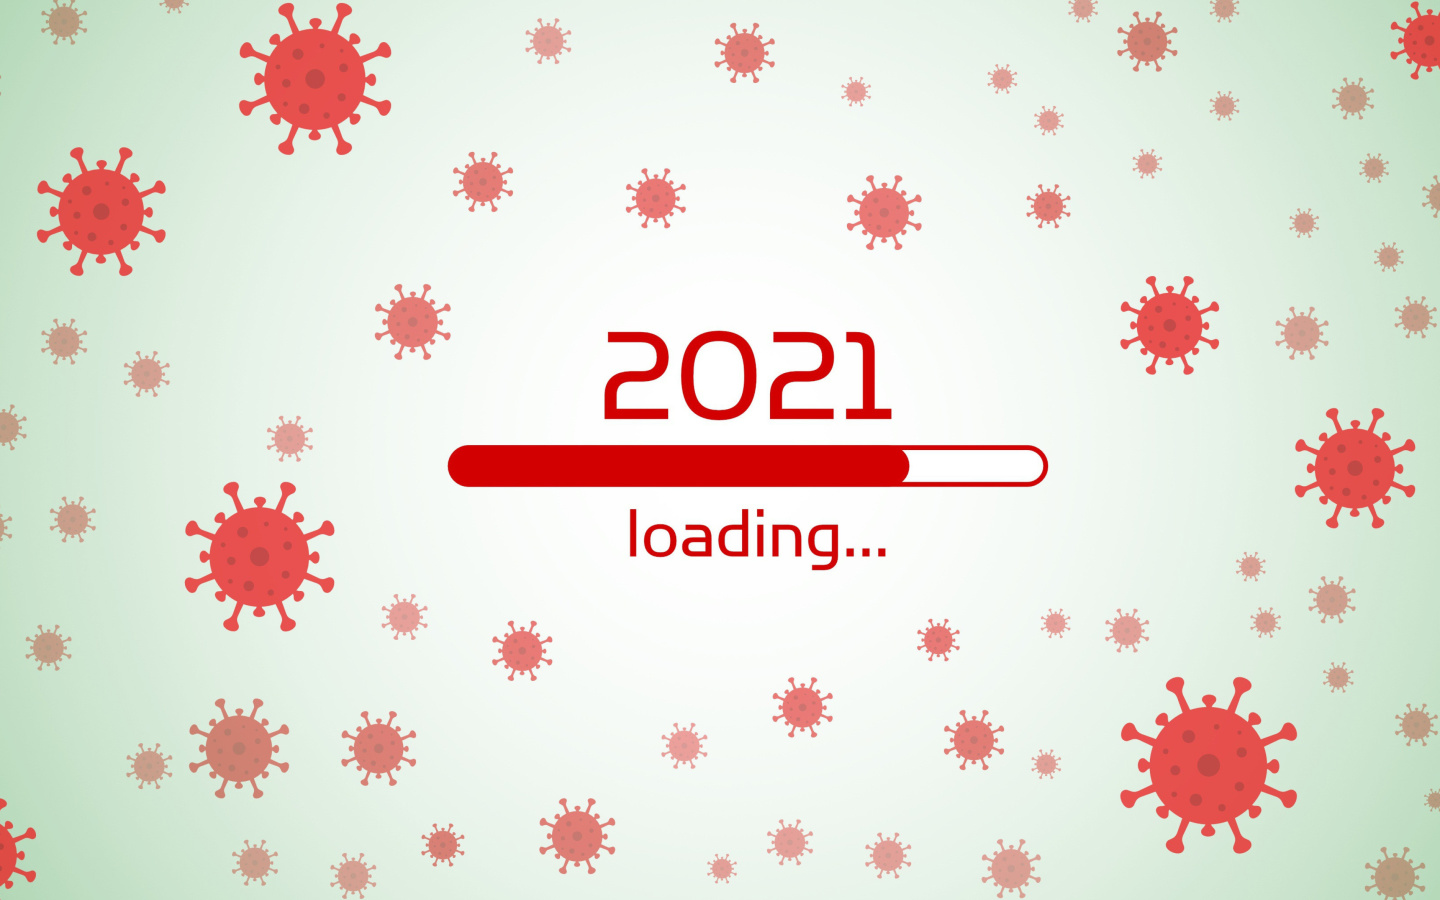 Обои 2021 New Year Loading 1440x900